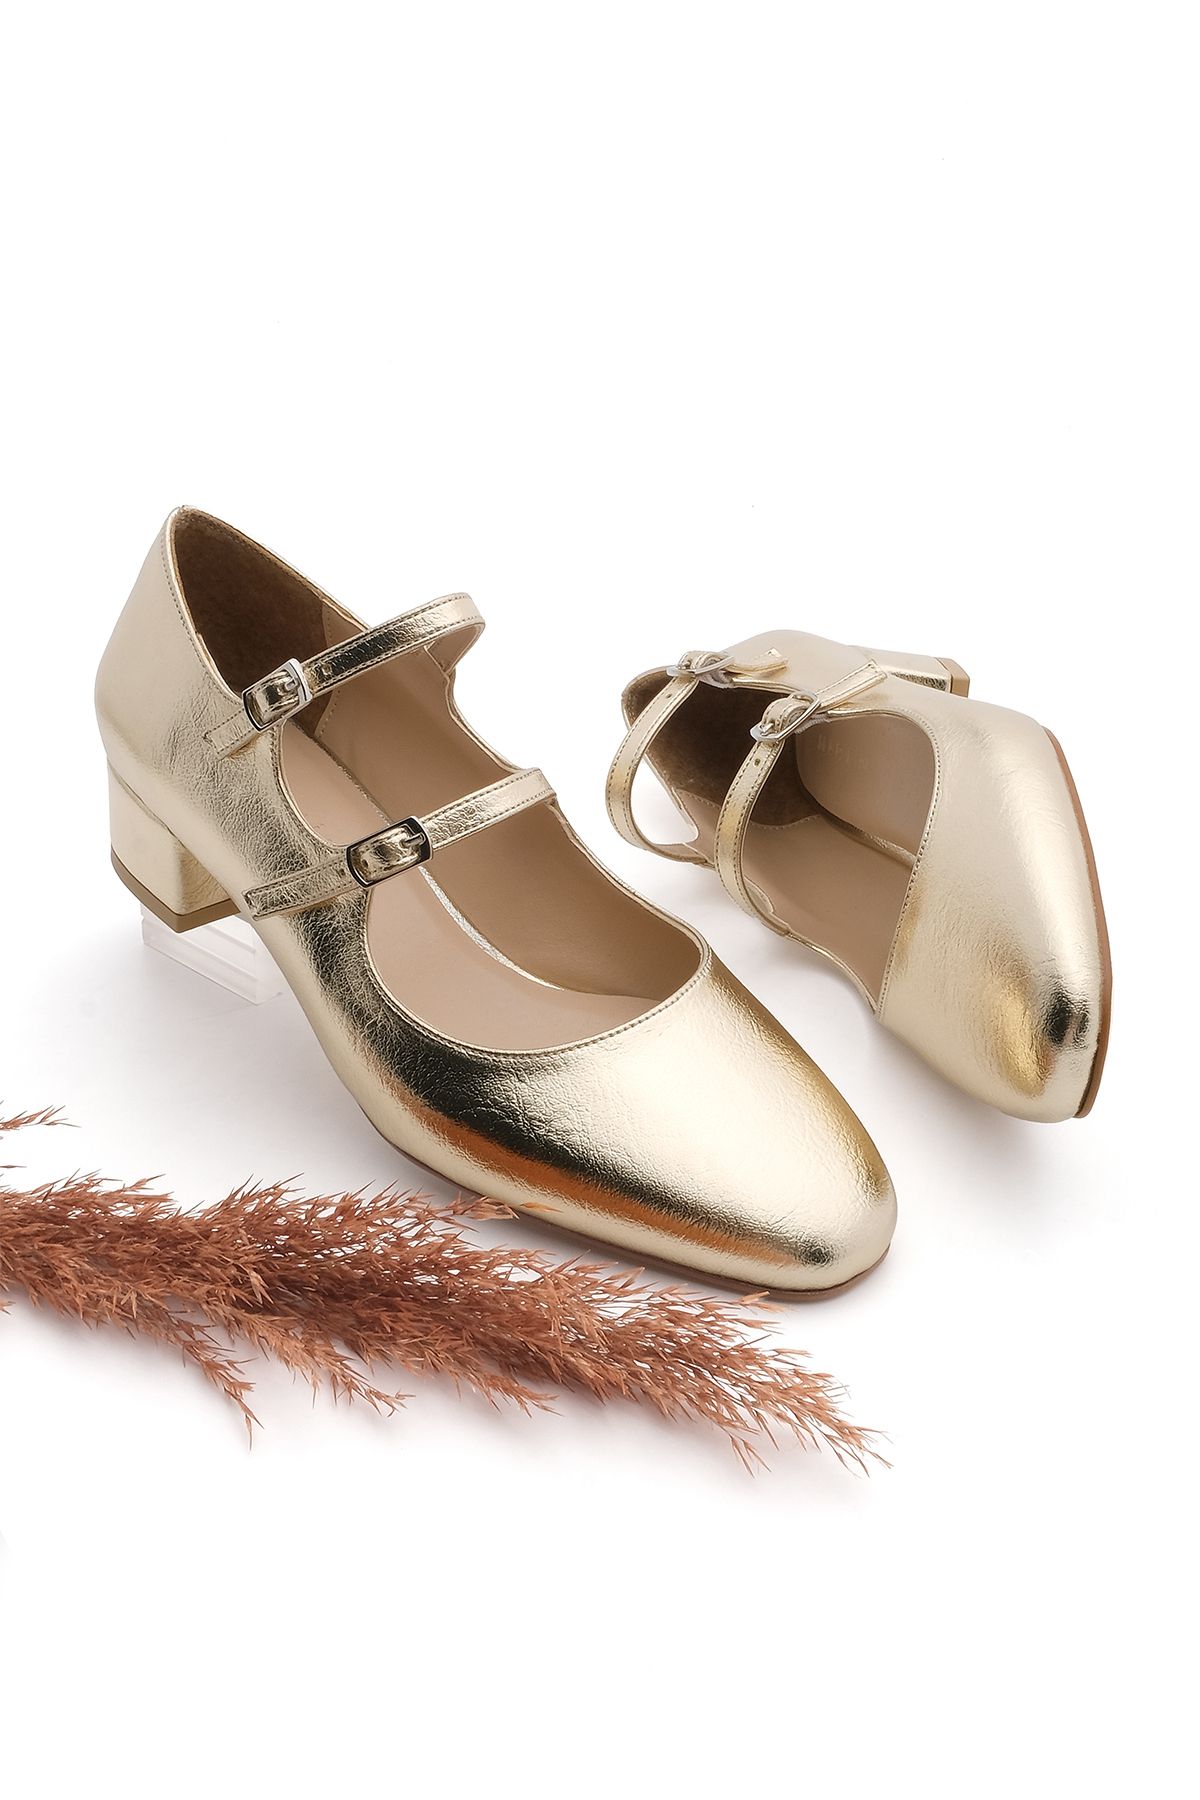 Marjin Kadın Çift Bantlı Klasik Topuklu Ayakkabı Alsef Altın